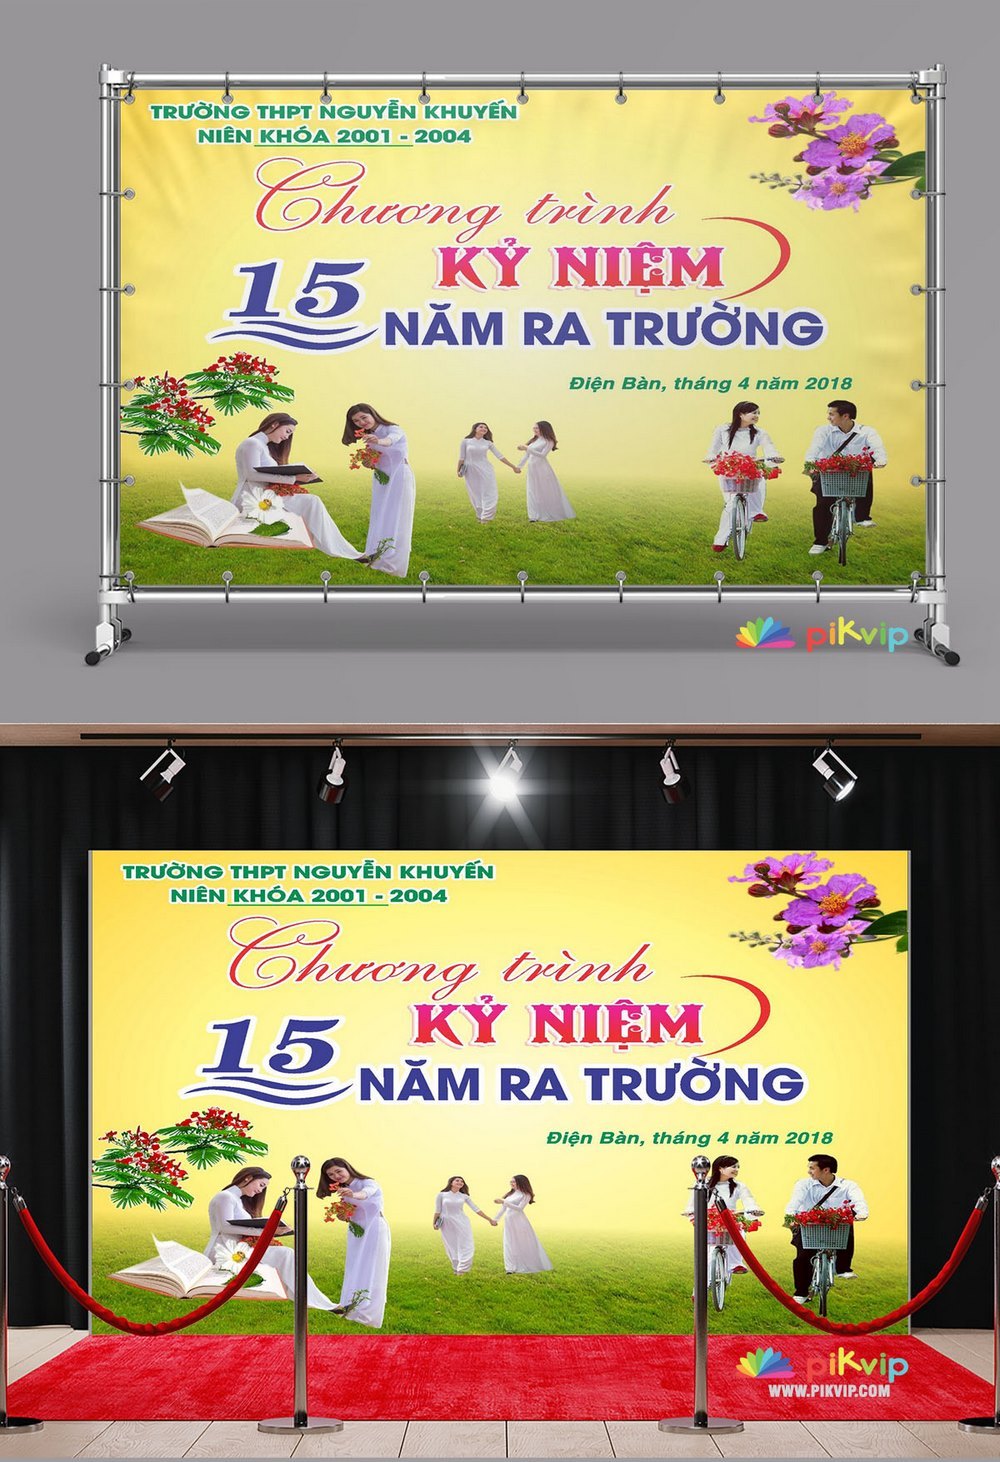 Market kỷ niệm 15 năm ra trường THPT Nguyễn Khuyến